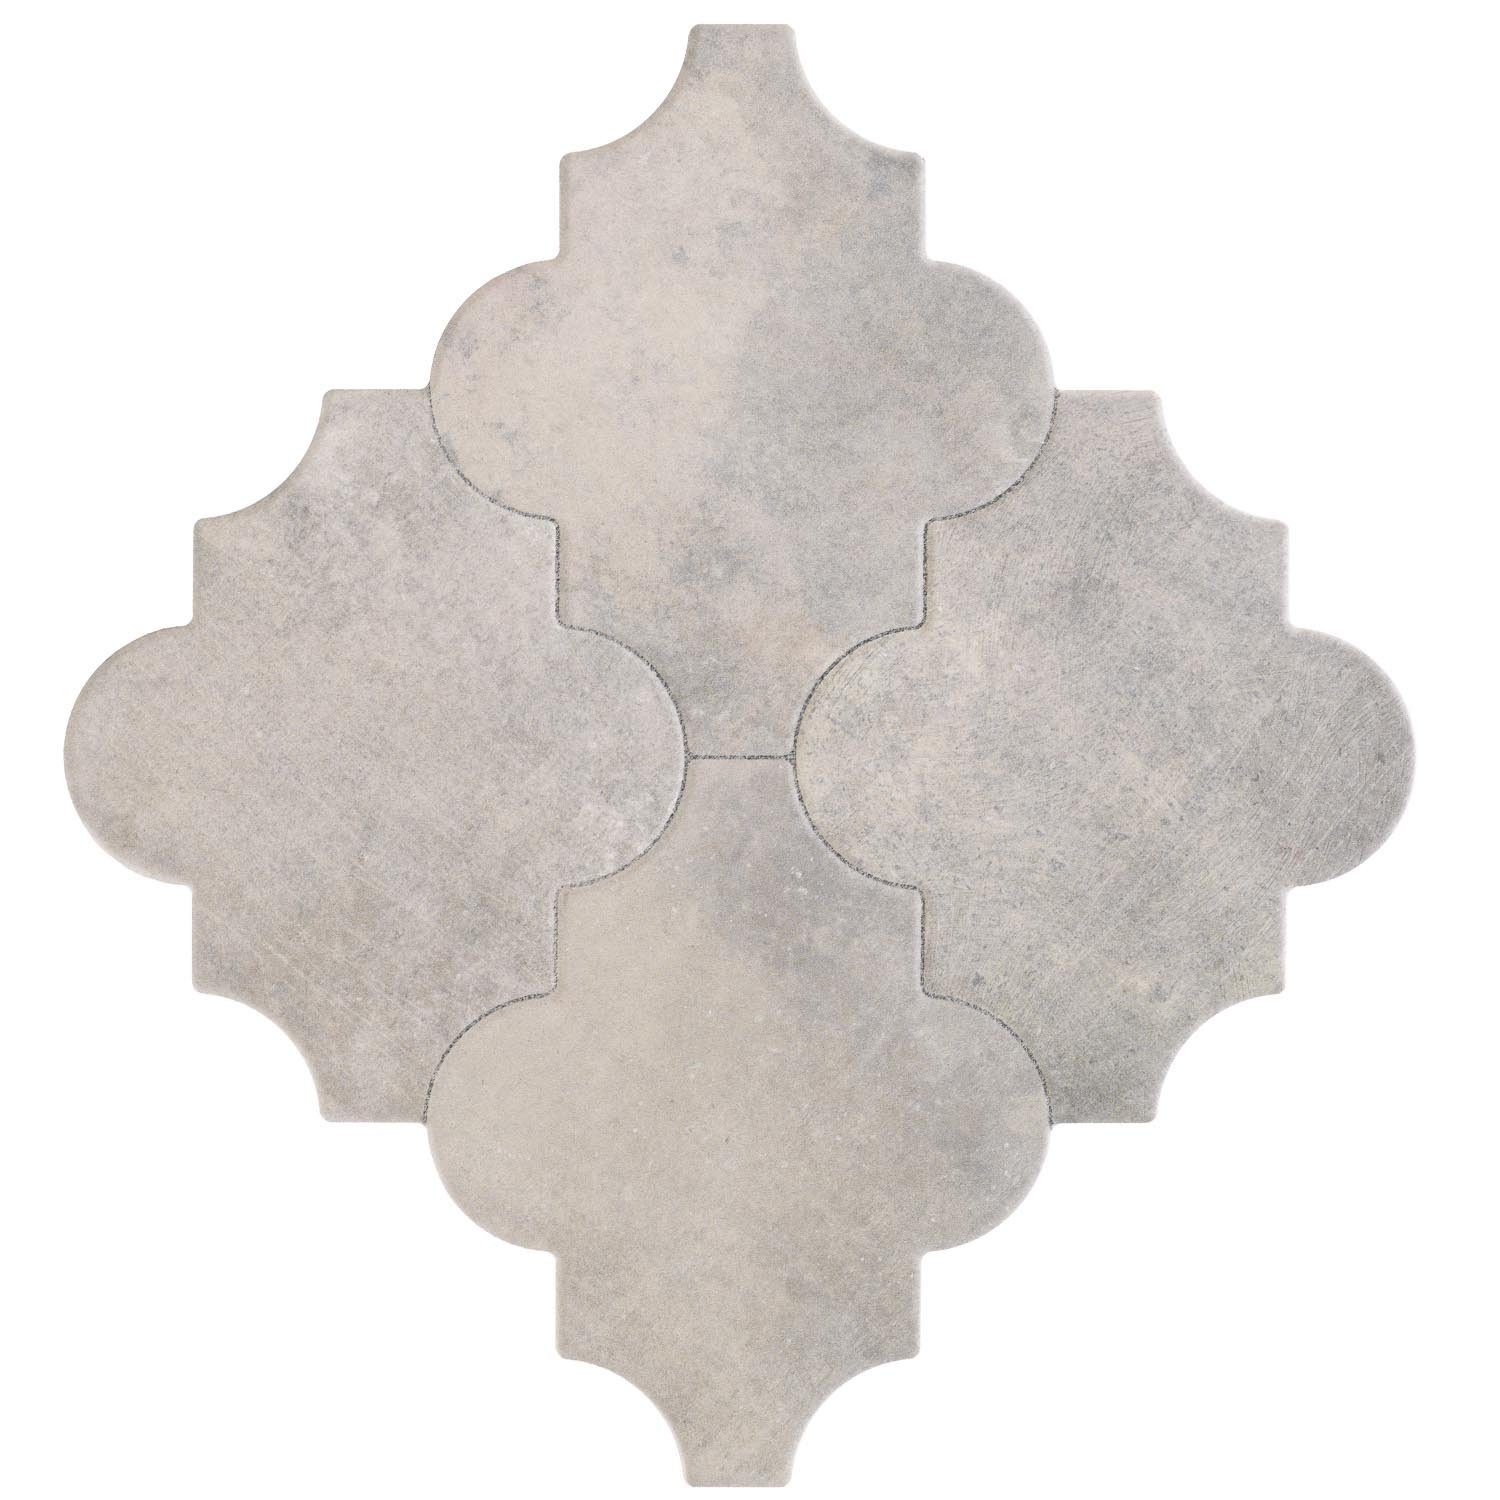 Keramikfliesen, Boden Casa 1m² Fliesen mit Bodenfliese 45x45, Bunt, Orientalische Keramik Marokkanische FL2037 Form & Risha Arabesque und Wand, für Moro Betonoptik,